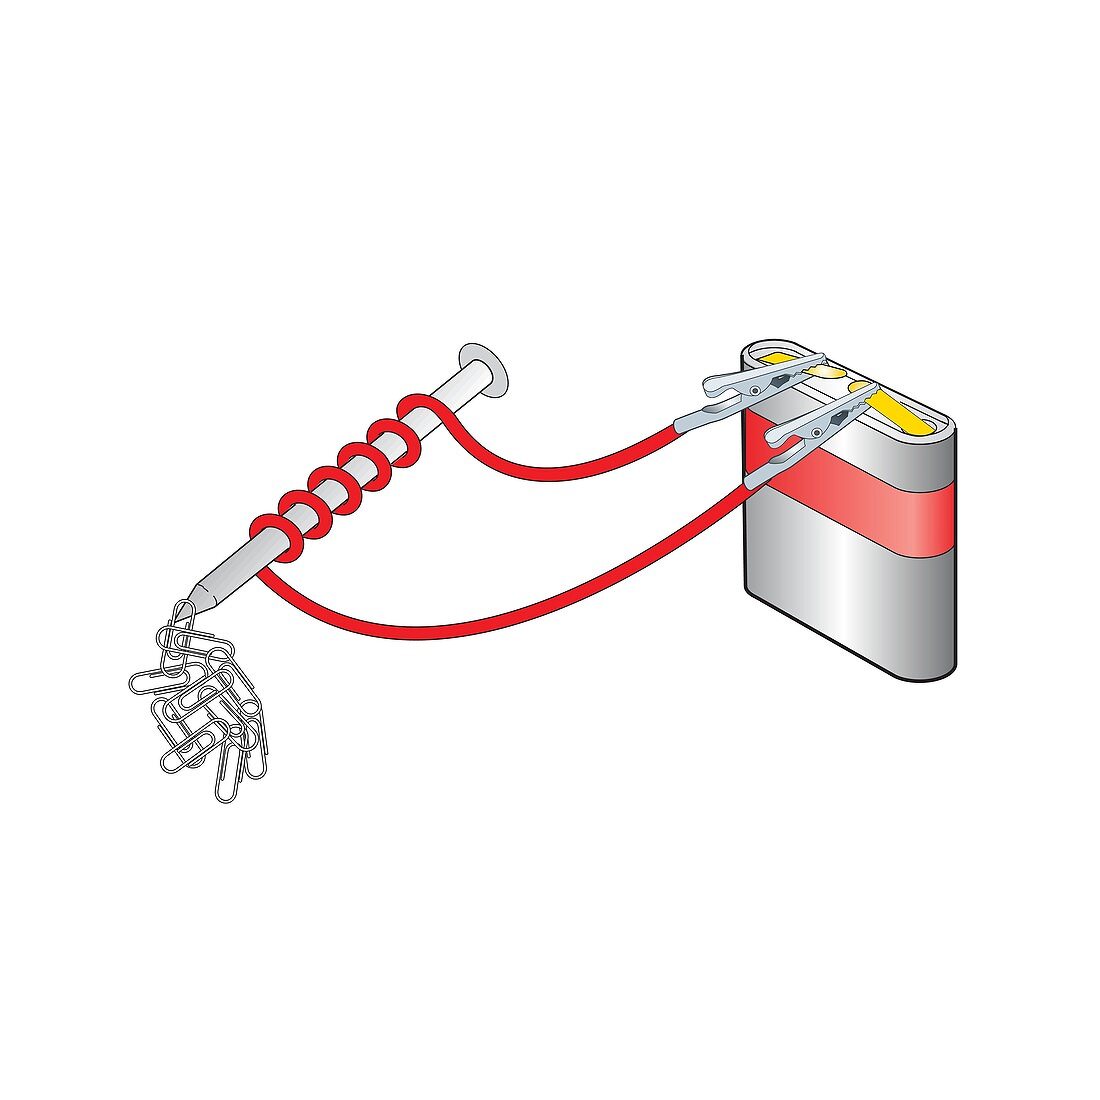 Electromagnet, illustration